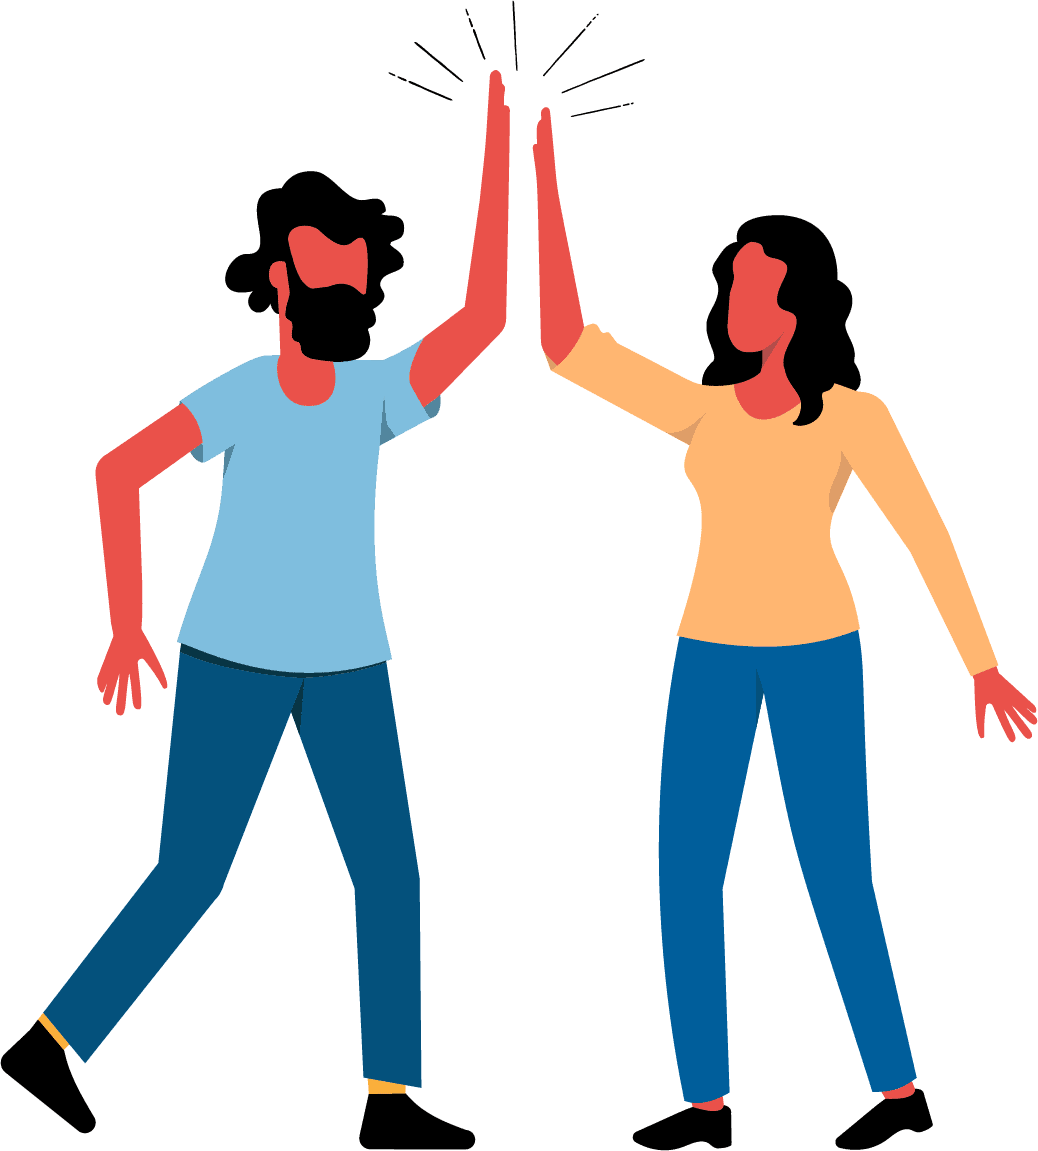 Dos adultos humanos utilizan el gesto común de celebración o saludo en el que dos humanos se dan palmadas con los brazos levantados.